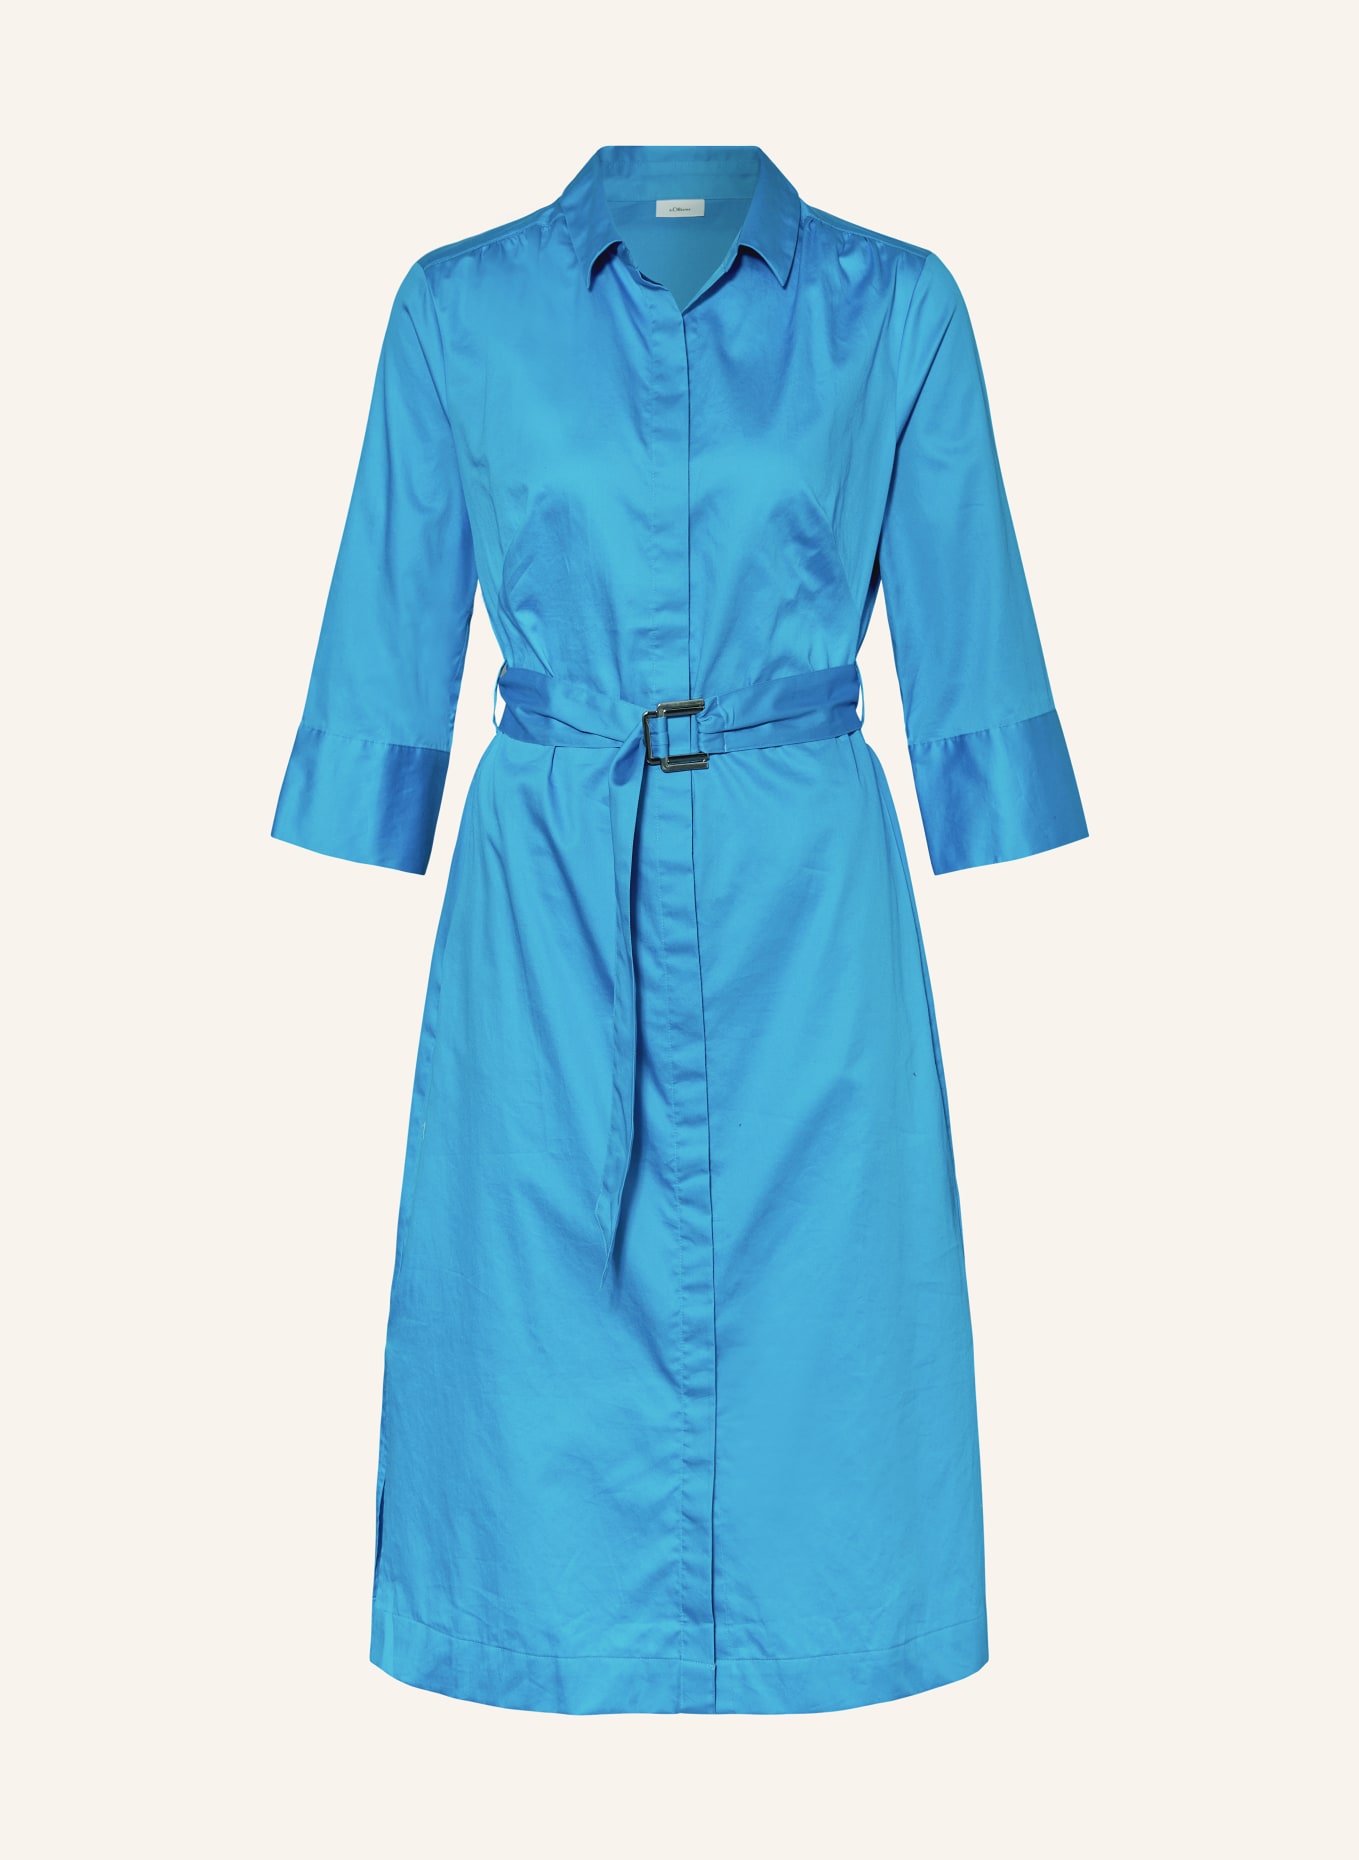 s.Oliver BLACK LABEL Shirt dress with 3/4 sleeves, Color: BLUE (Image 1)